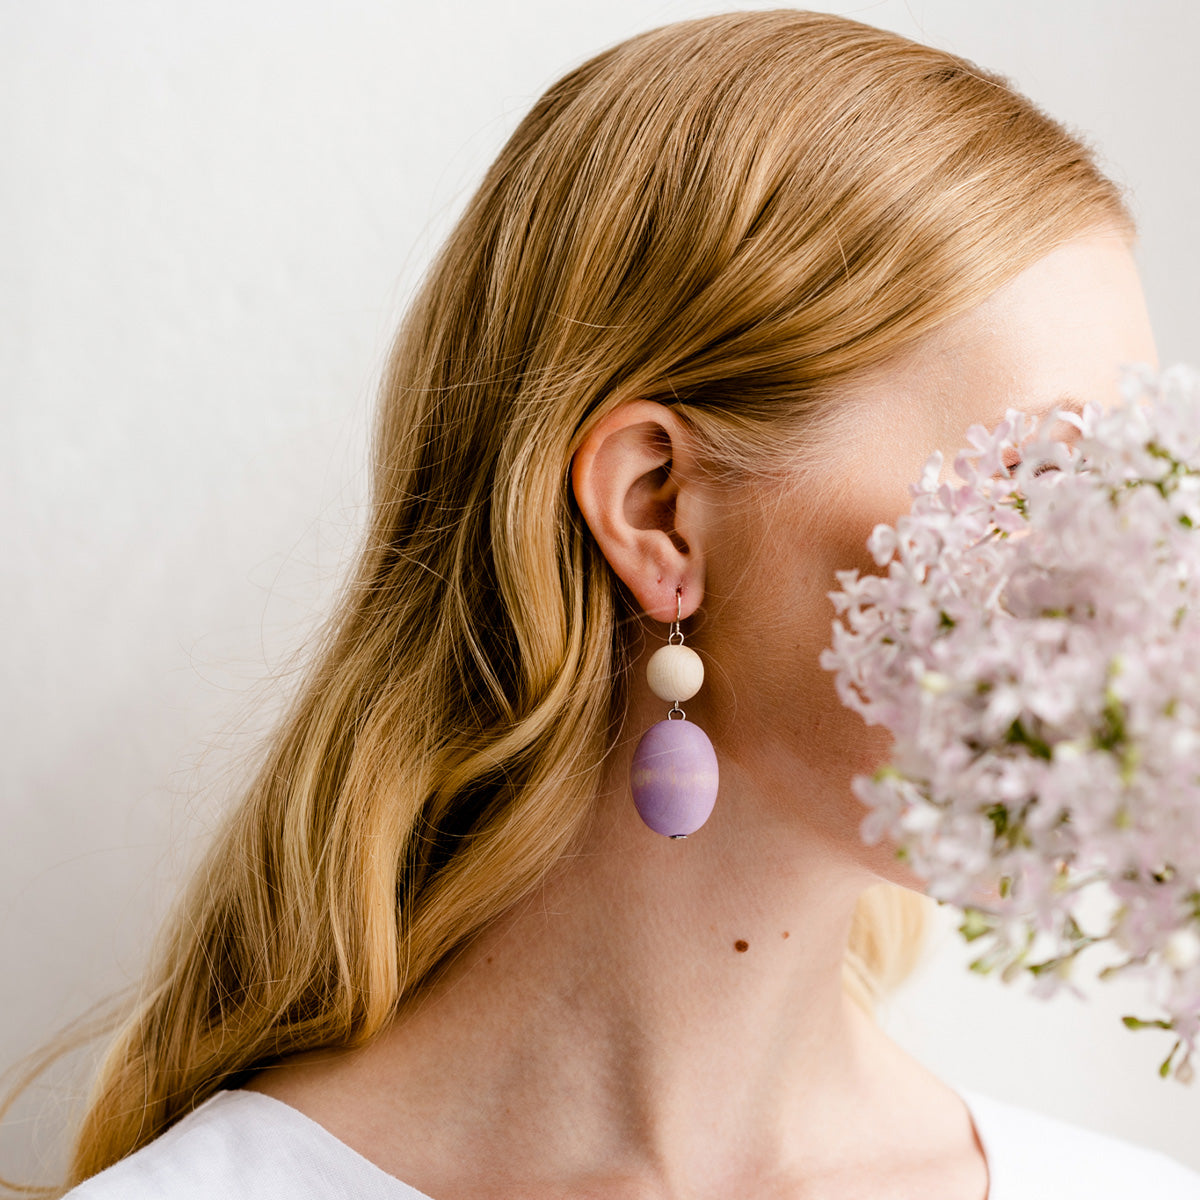 Taateli earrings, lavender